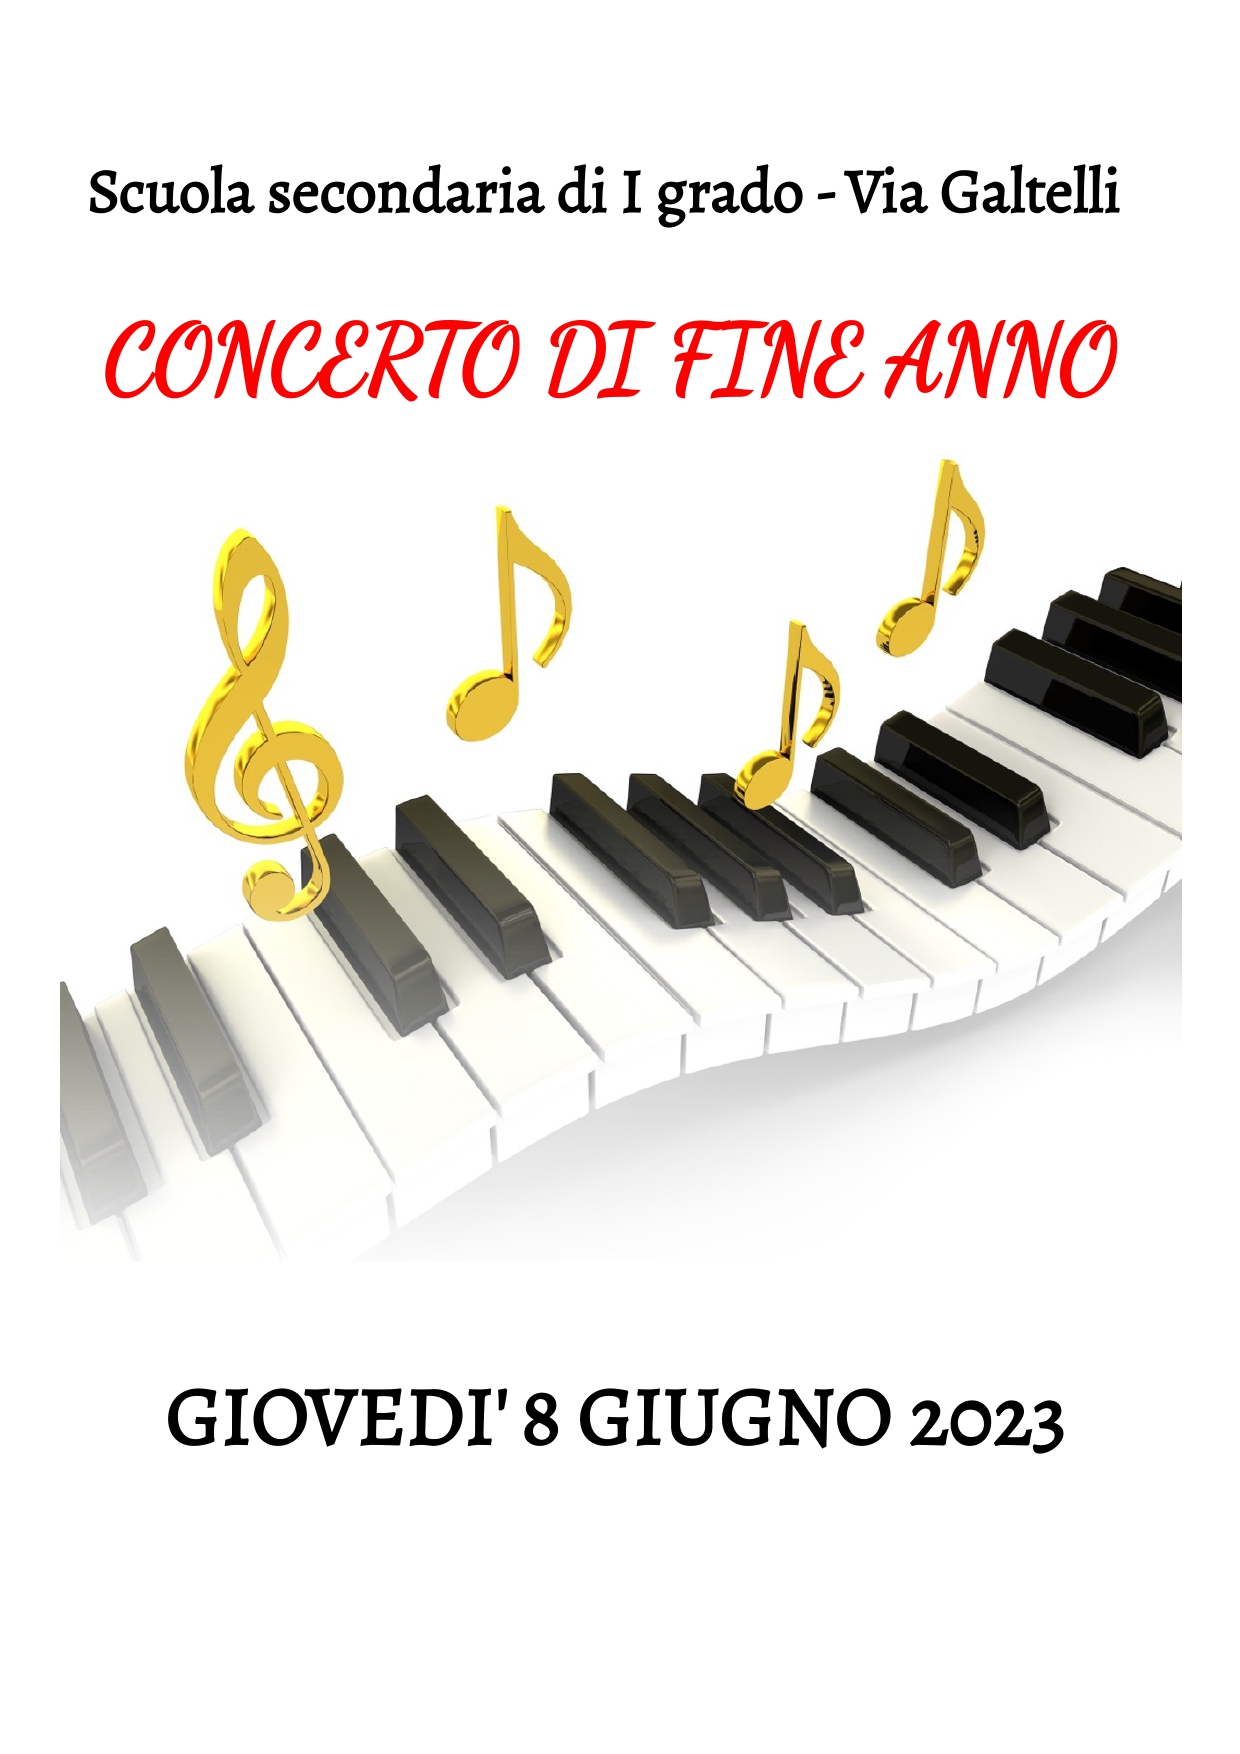 Concerto scuola Secondaria presso Aranova Via Galtelli